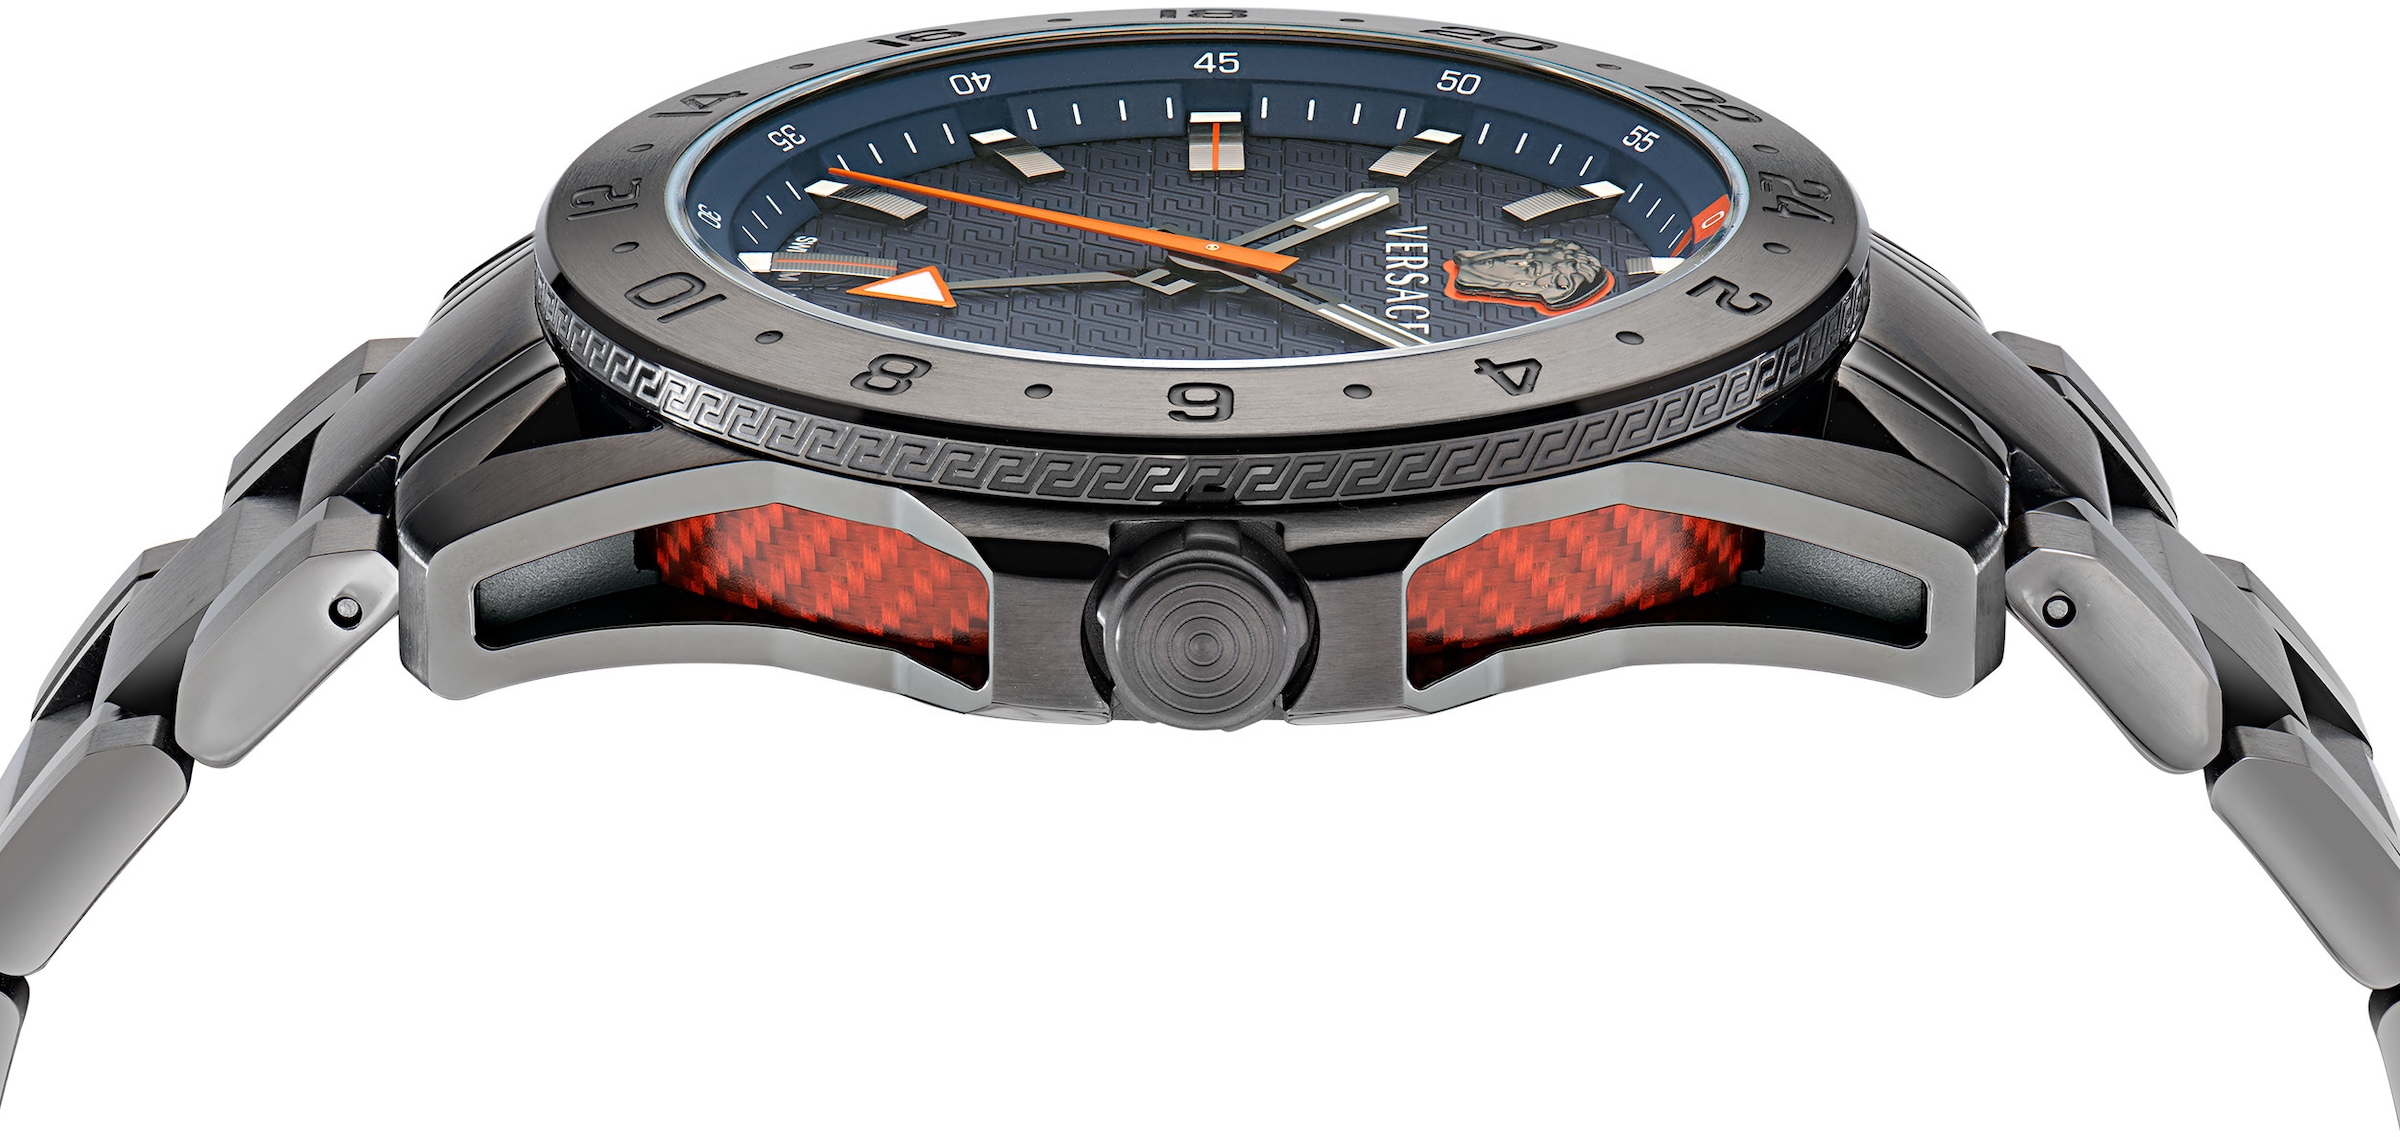 Versace Quarzuhr »SPORT TECH GMT, VE2W00422«, Armbanduhr, Herrenuhr, Saphirglas, Datum, Swiss Made, Leuchtzeiger